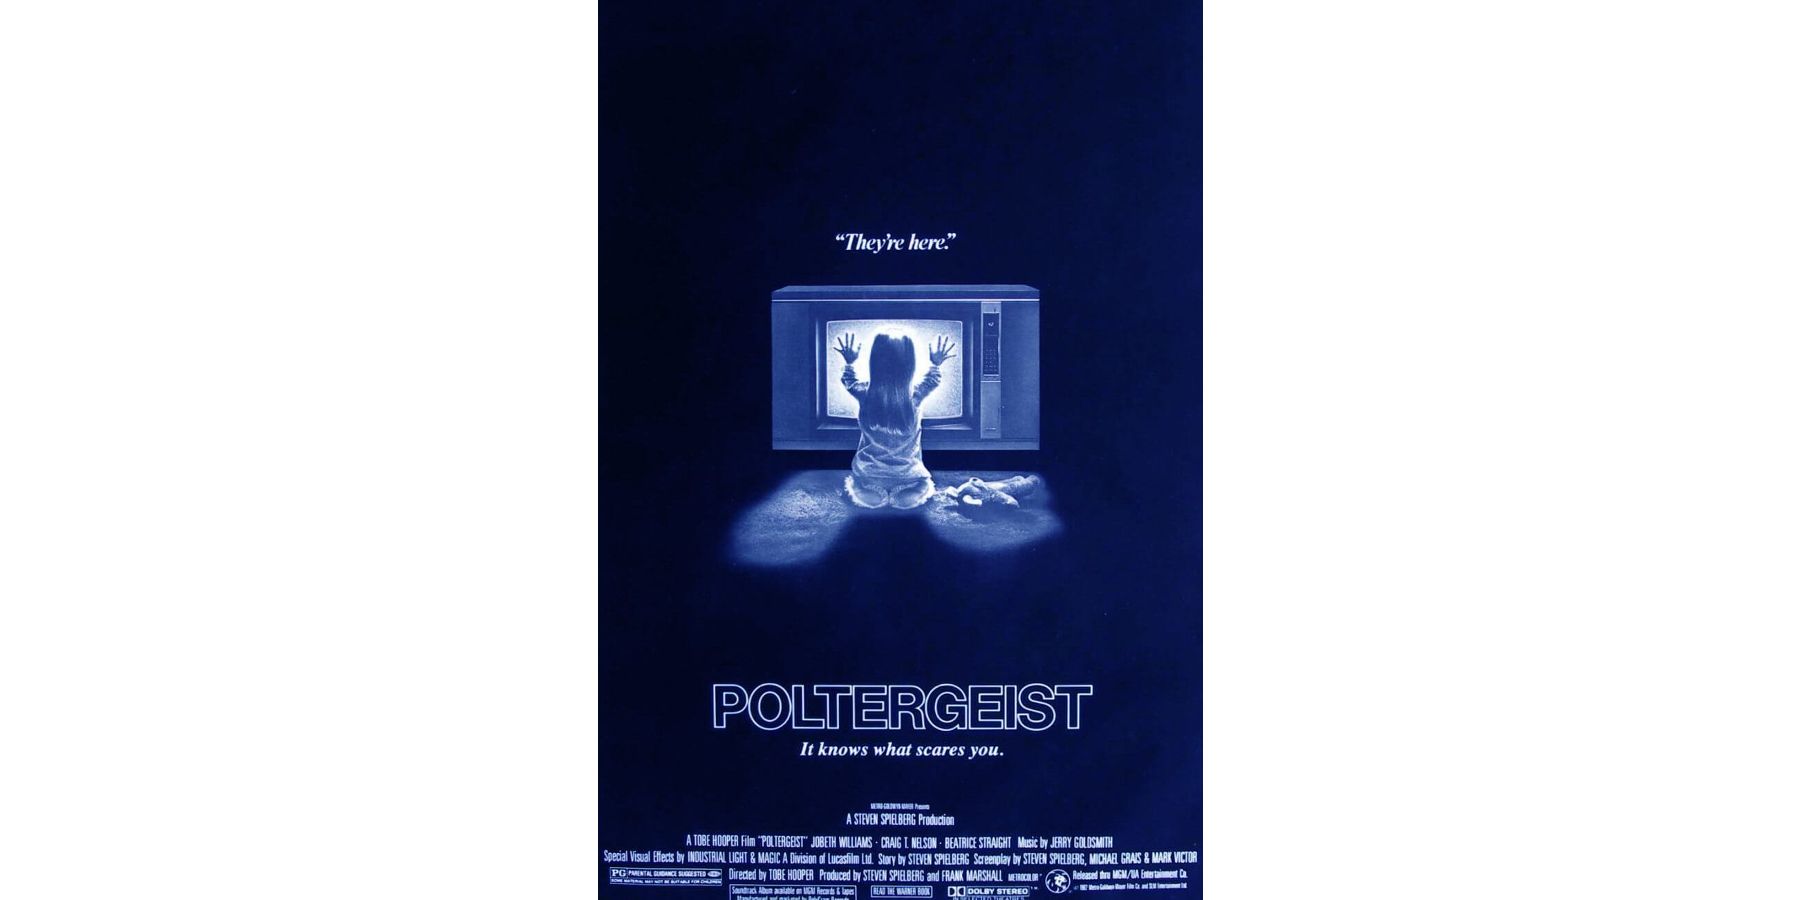 poltergeist-poster